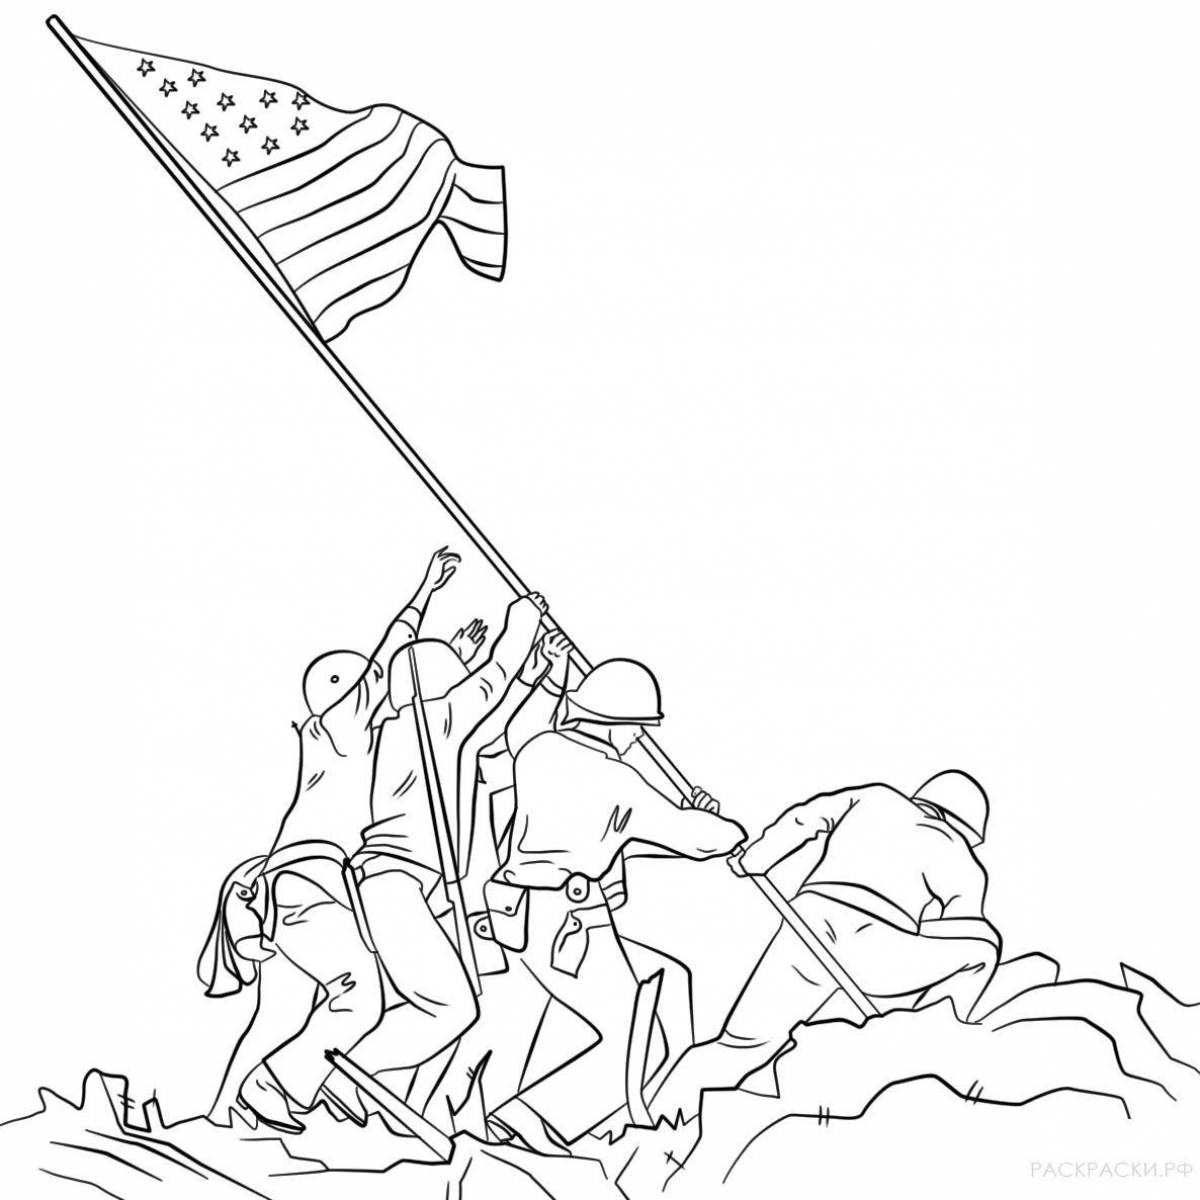 Enchanting patriotic drawing